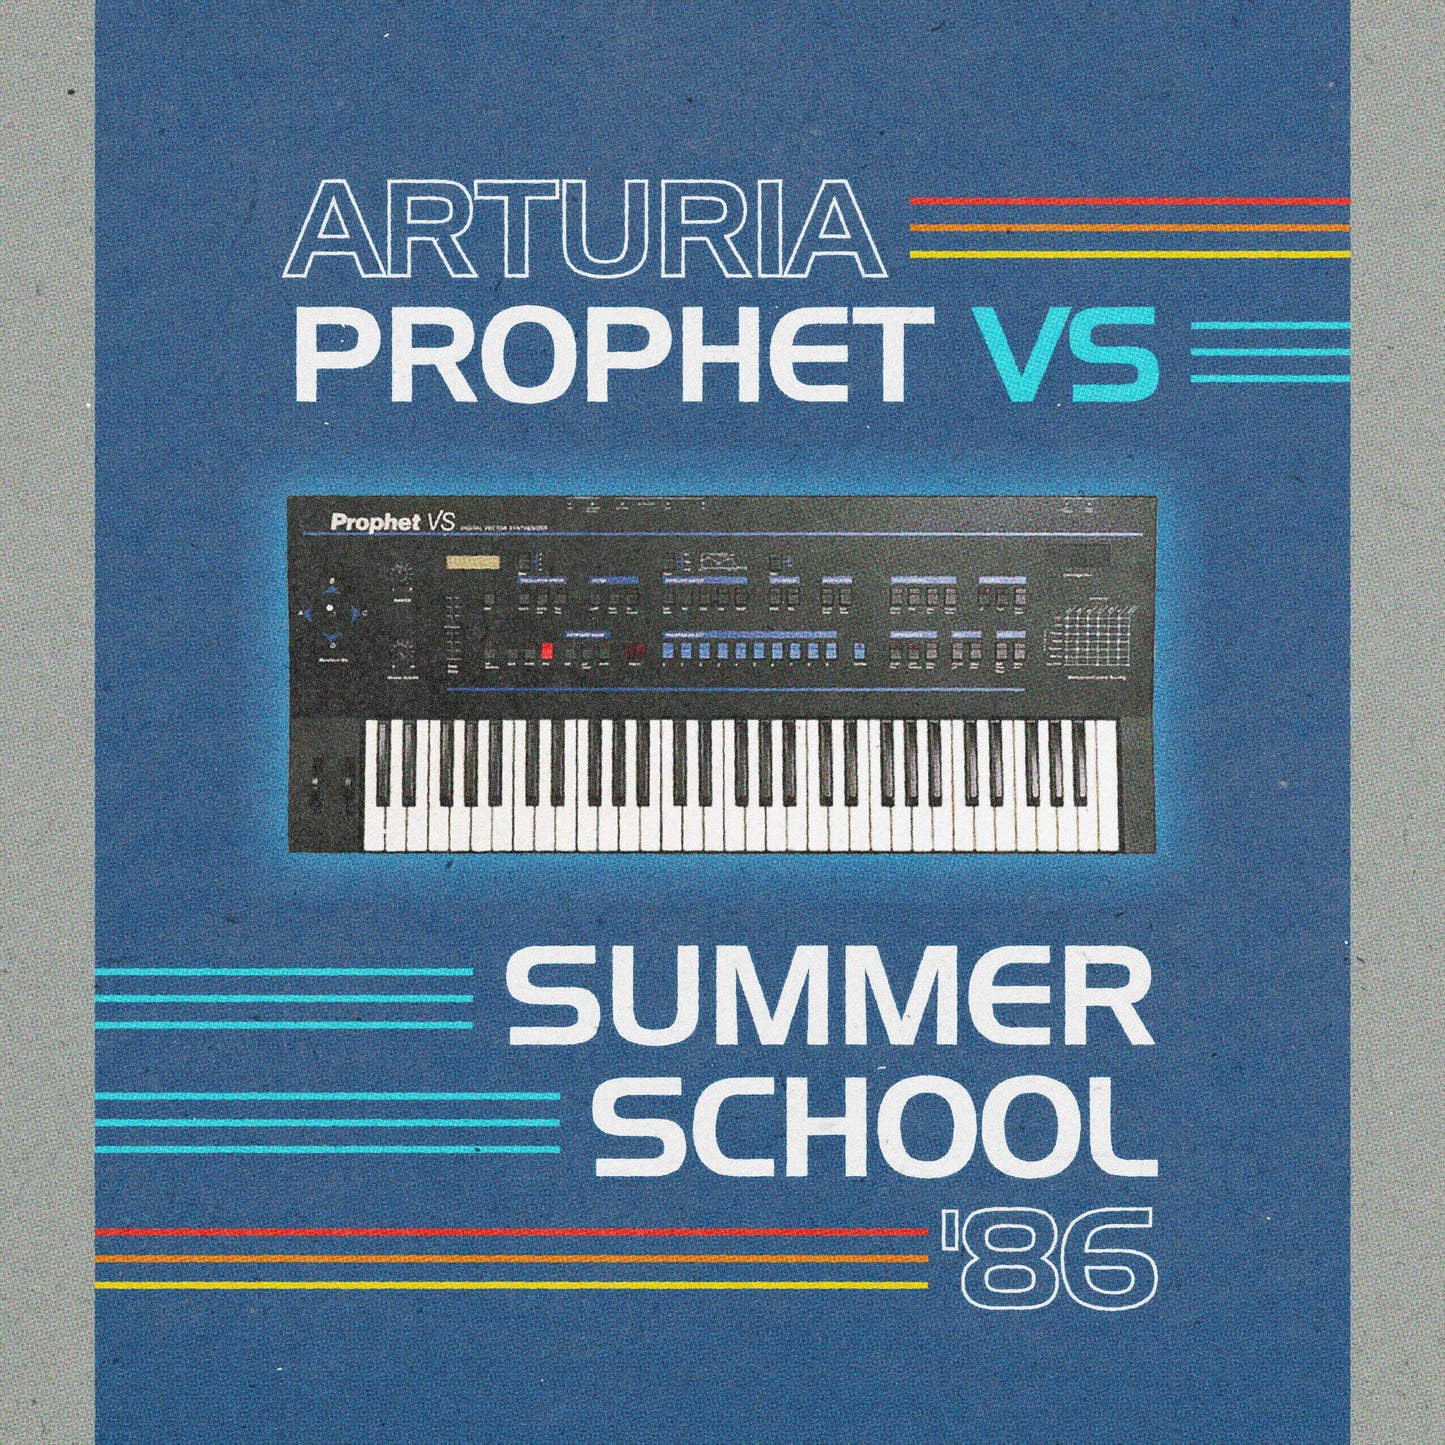 Arturia Prophet VS - Summer School '86 Sound Bank